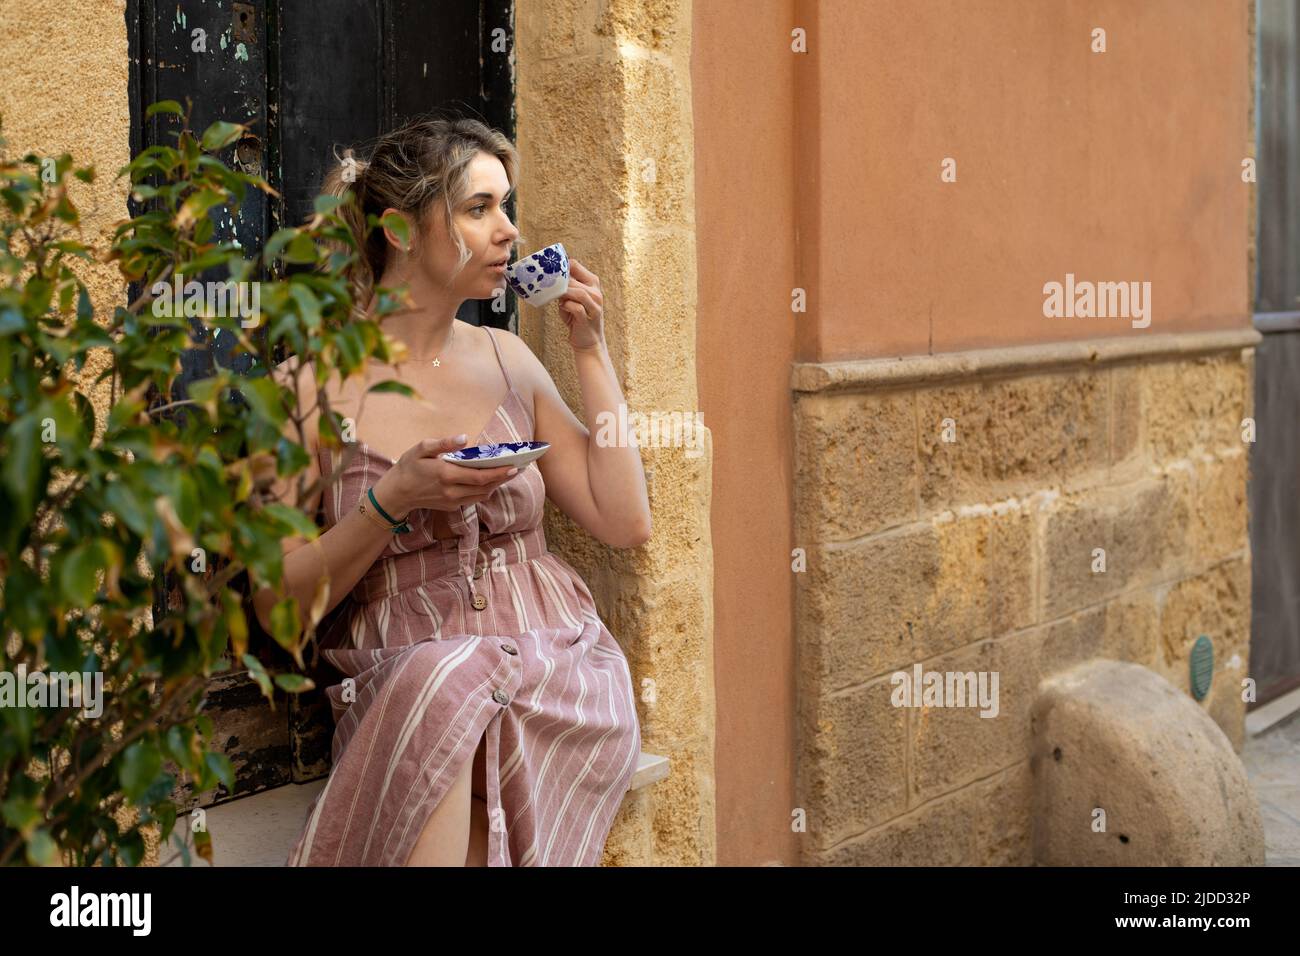 Porträt einer jungen Frau, die im Sommer rosa gestreiftes Kleid trägt, neben dem Olivenbaum sitzt, Kaffee trinkt und das Aroma genießt. Stockfoto